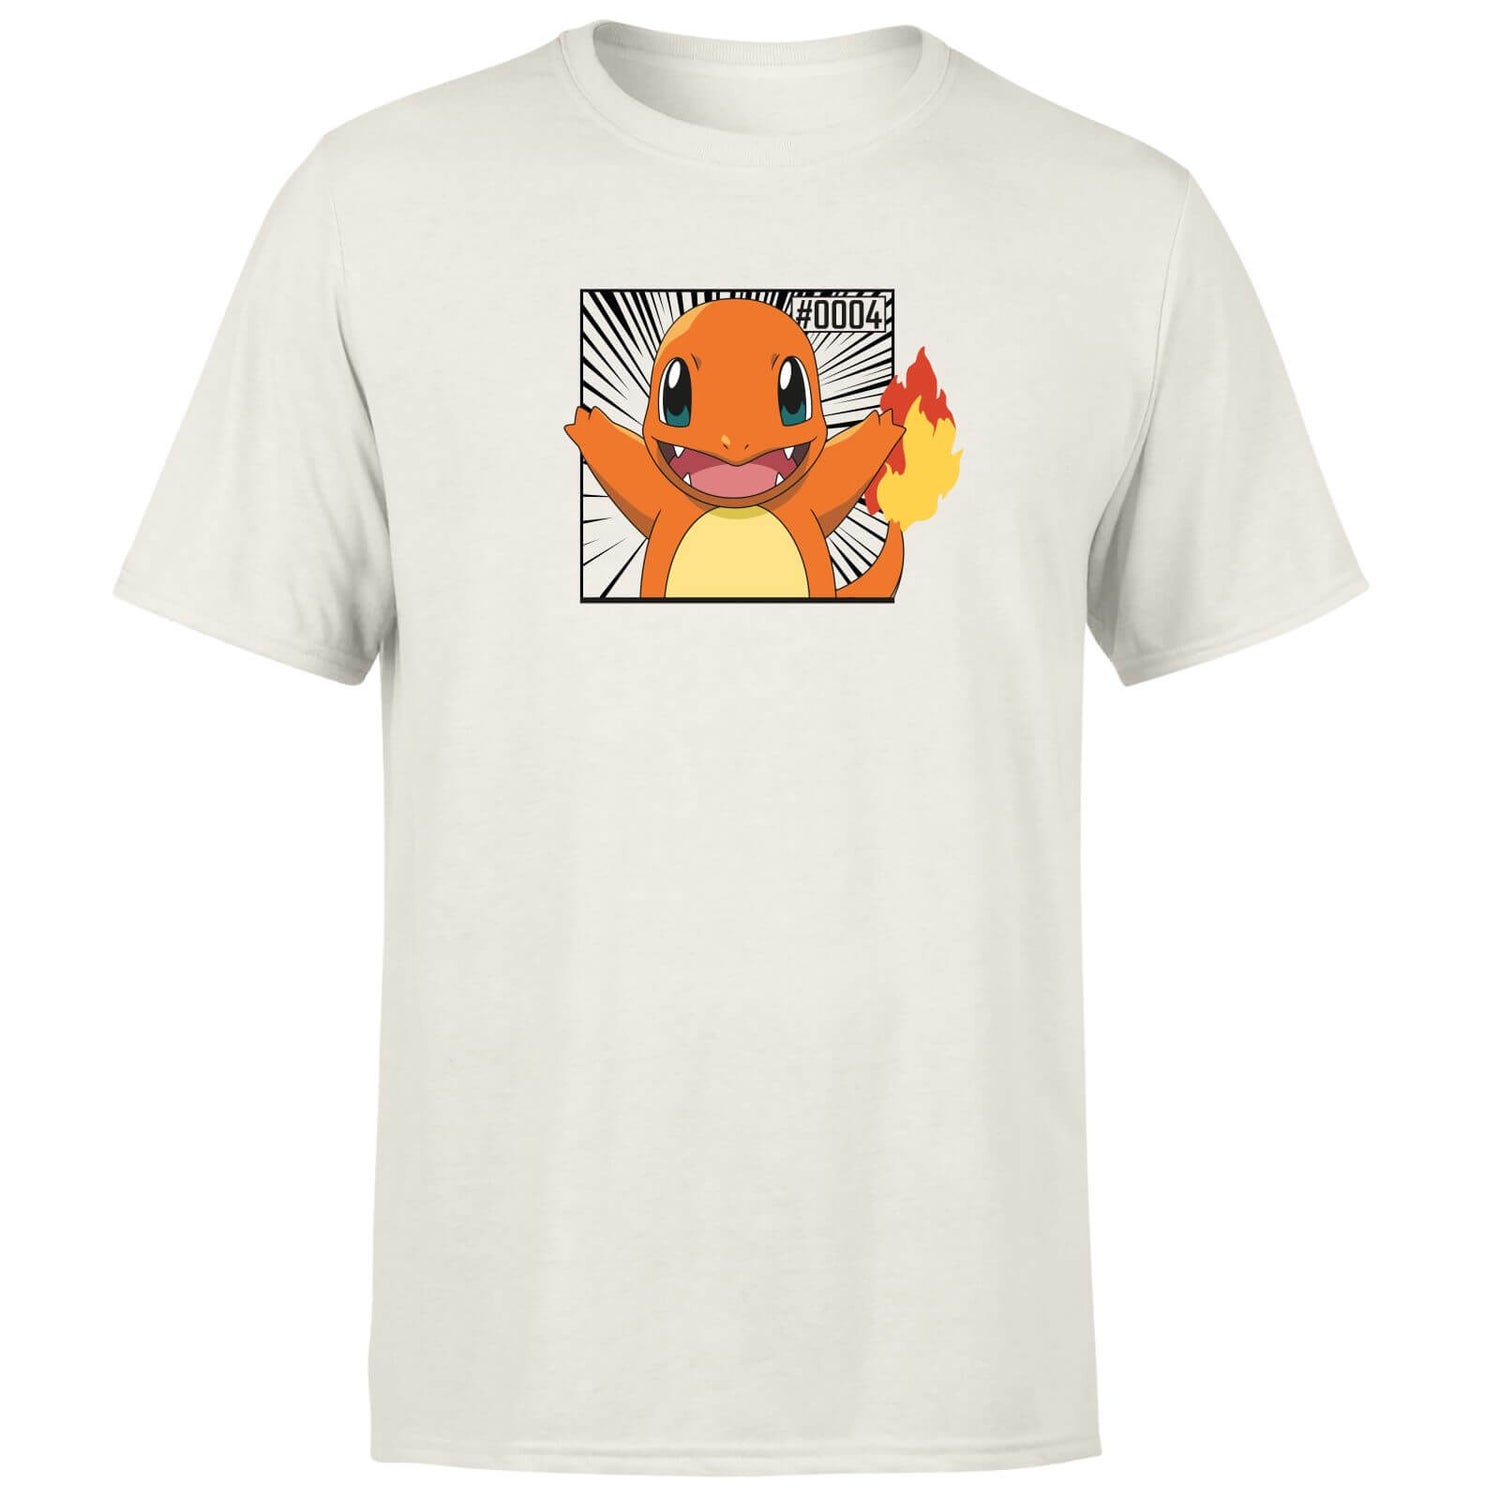 Pokémon Pokédex Charmander #0004 Hombre Camiseta - Crema